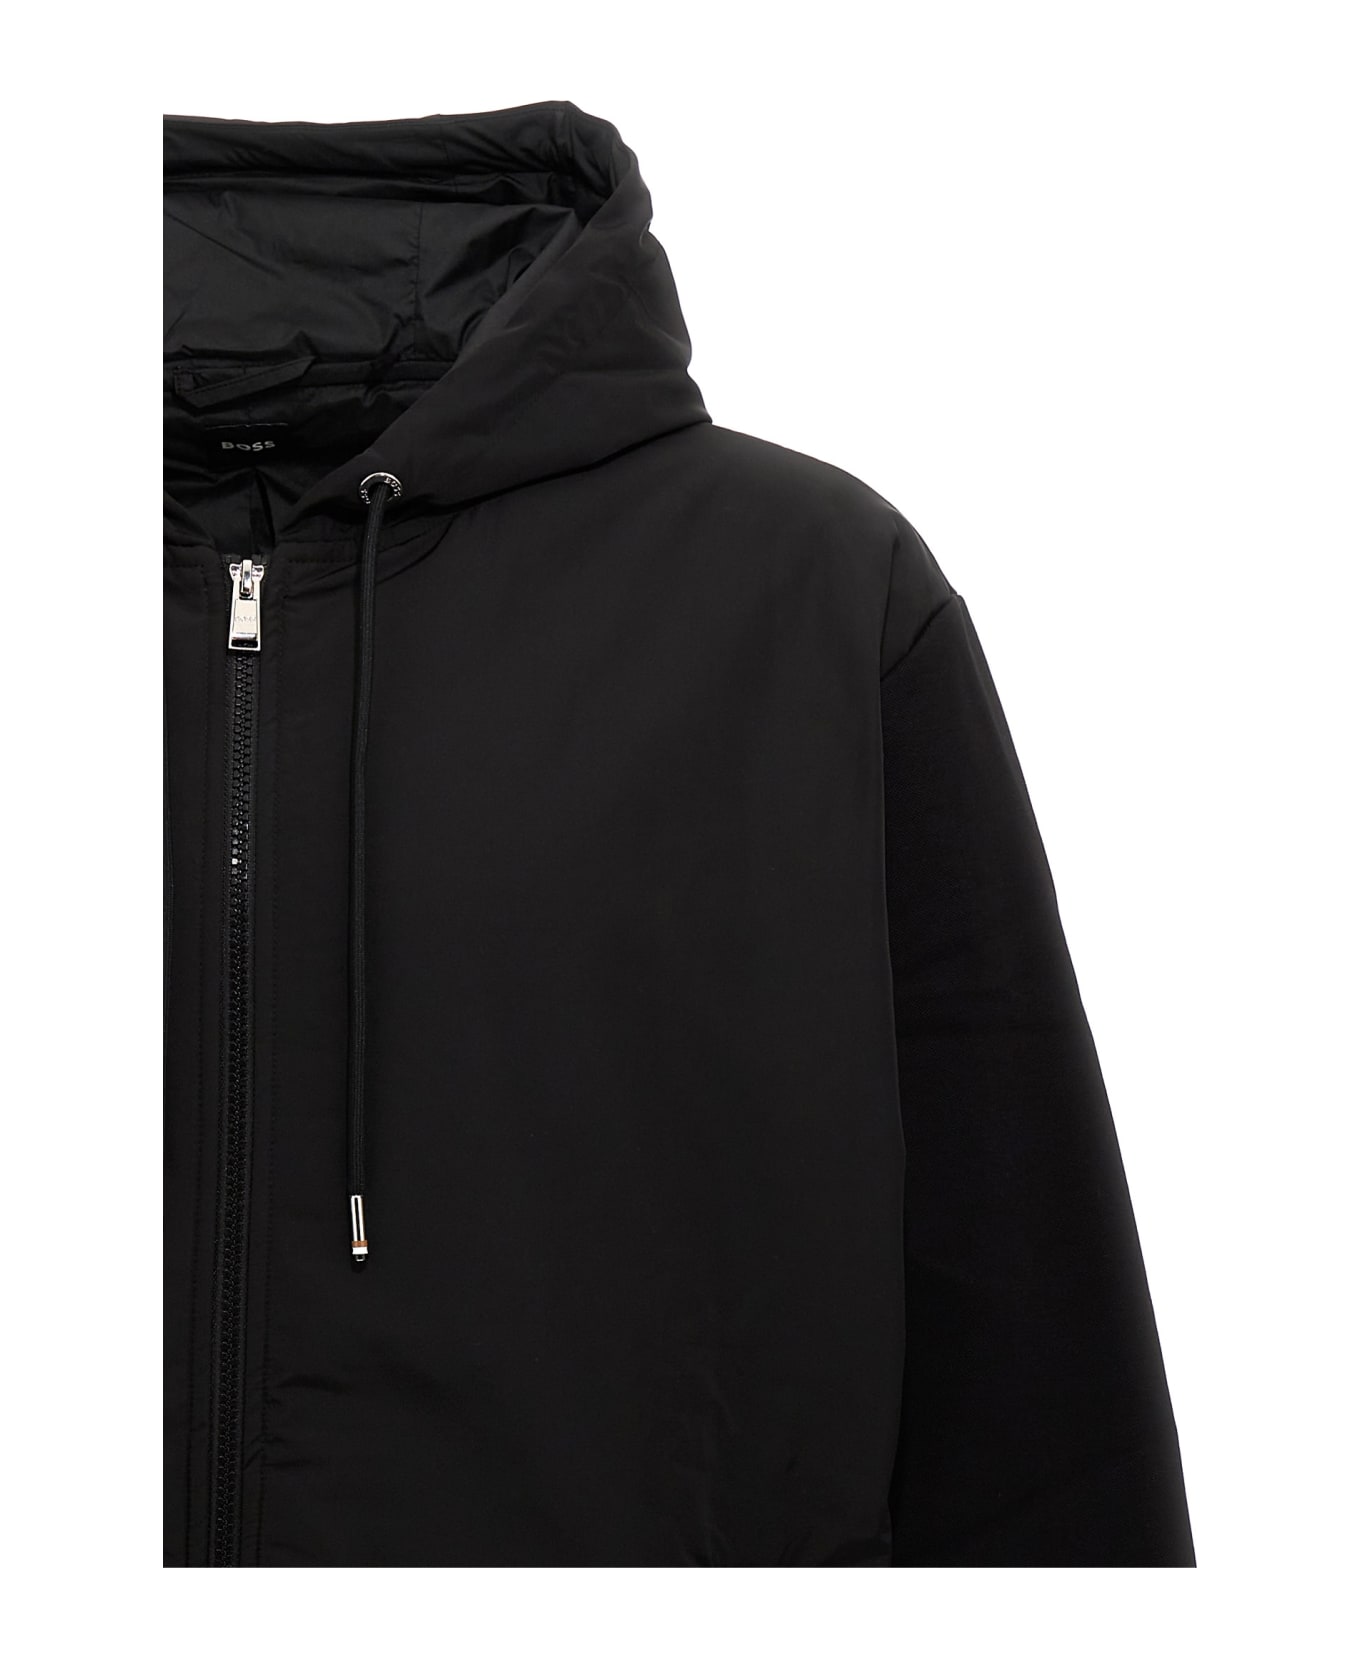 Hugo Boss 'sommers 66' Hooded Jacket - Black   ジャケット